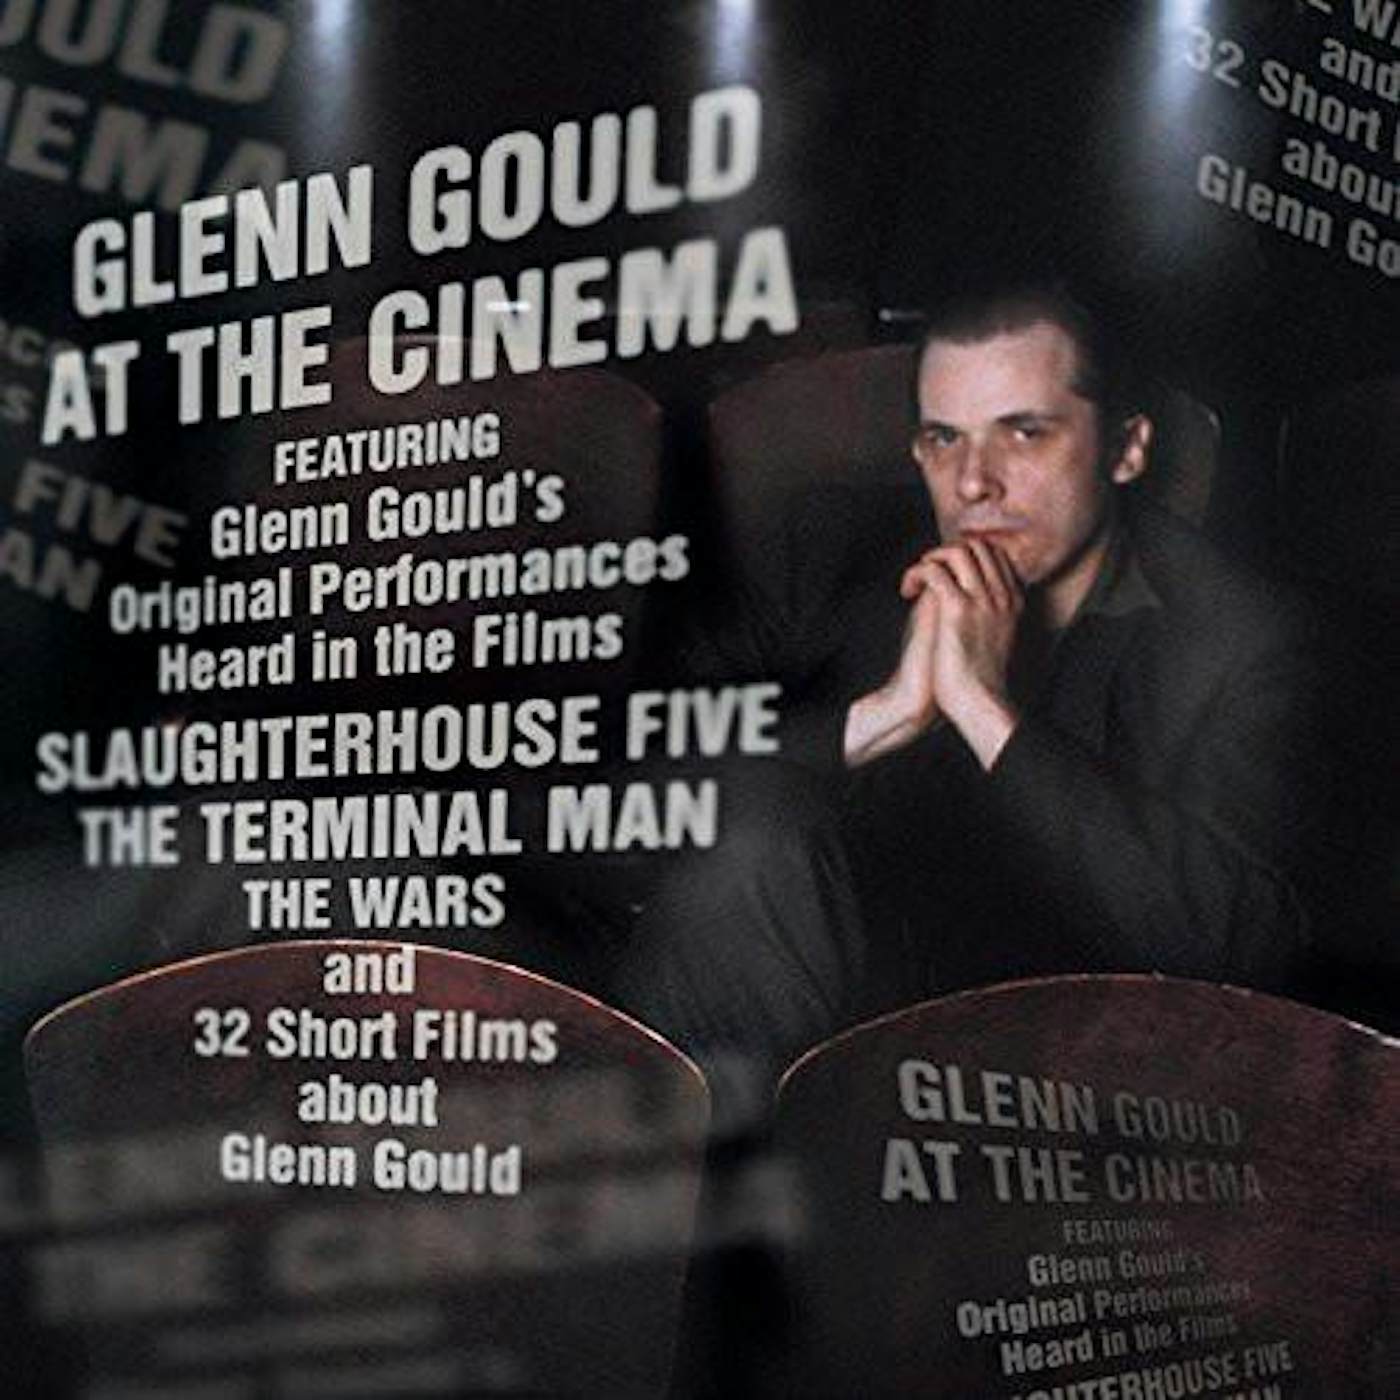 Glenn Gould AT THE MOVIES CD